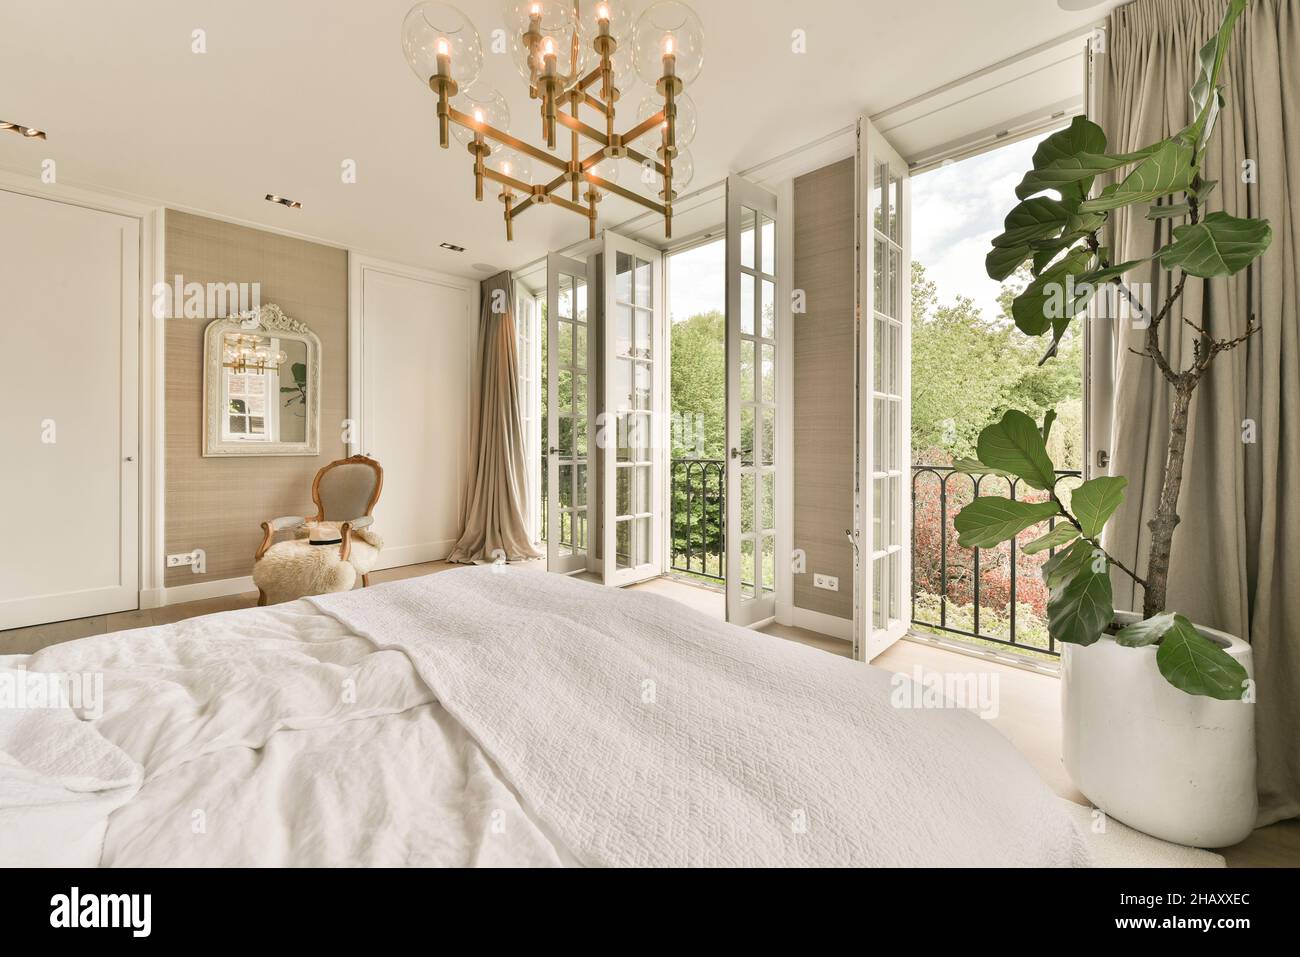 Komfortables Schlafzimmer in Pastelltönen mit großen Fenstern, die sich öffnen lassen, mit beigen Vorhängen, Retro-Sessel mit karierten, großen Betten, die mit Deckeln und überzogen sind Stockfoto